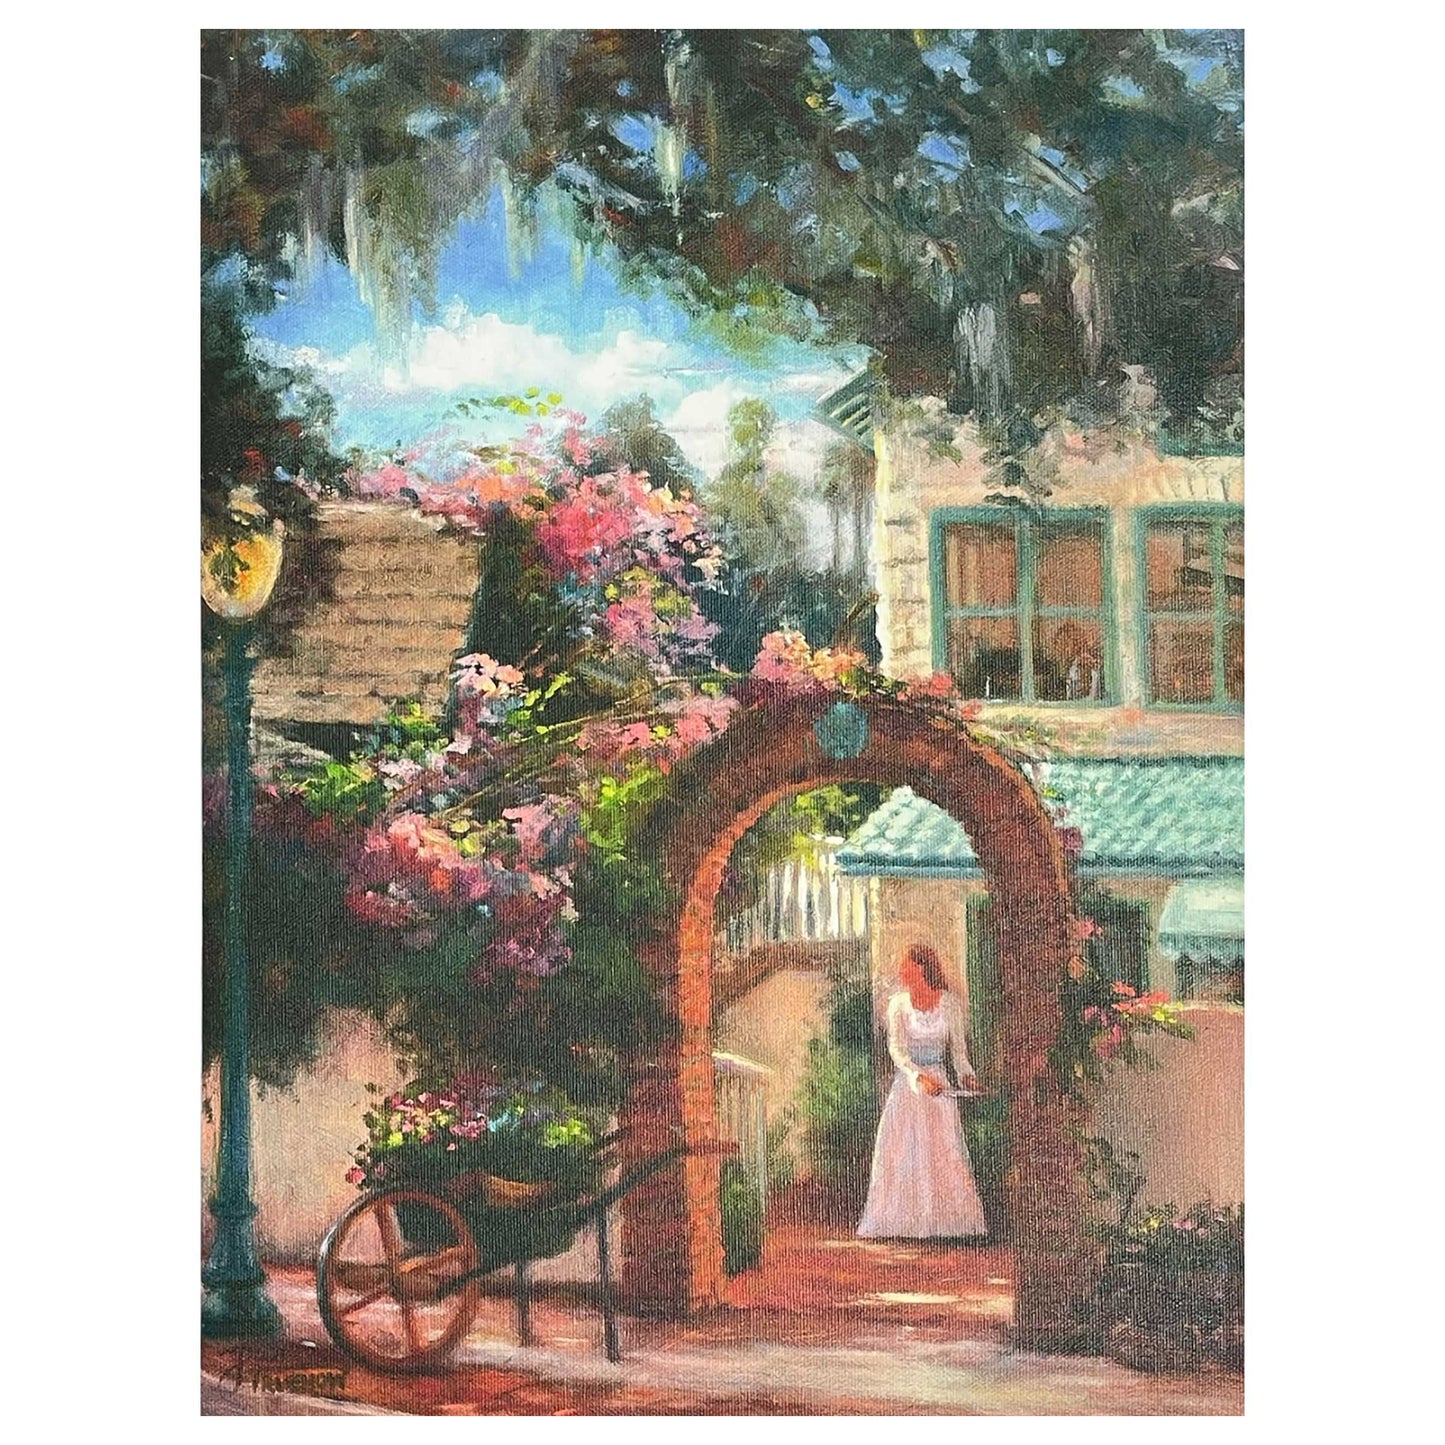 embellished giclee canvas, landscape scene, garden scene, floral art, Florida landscape